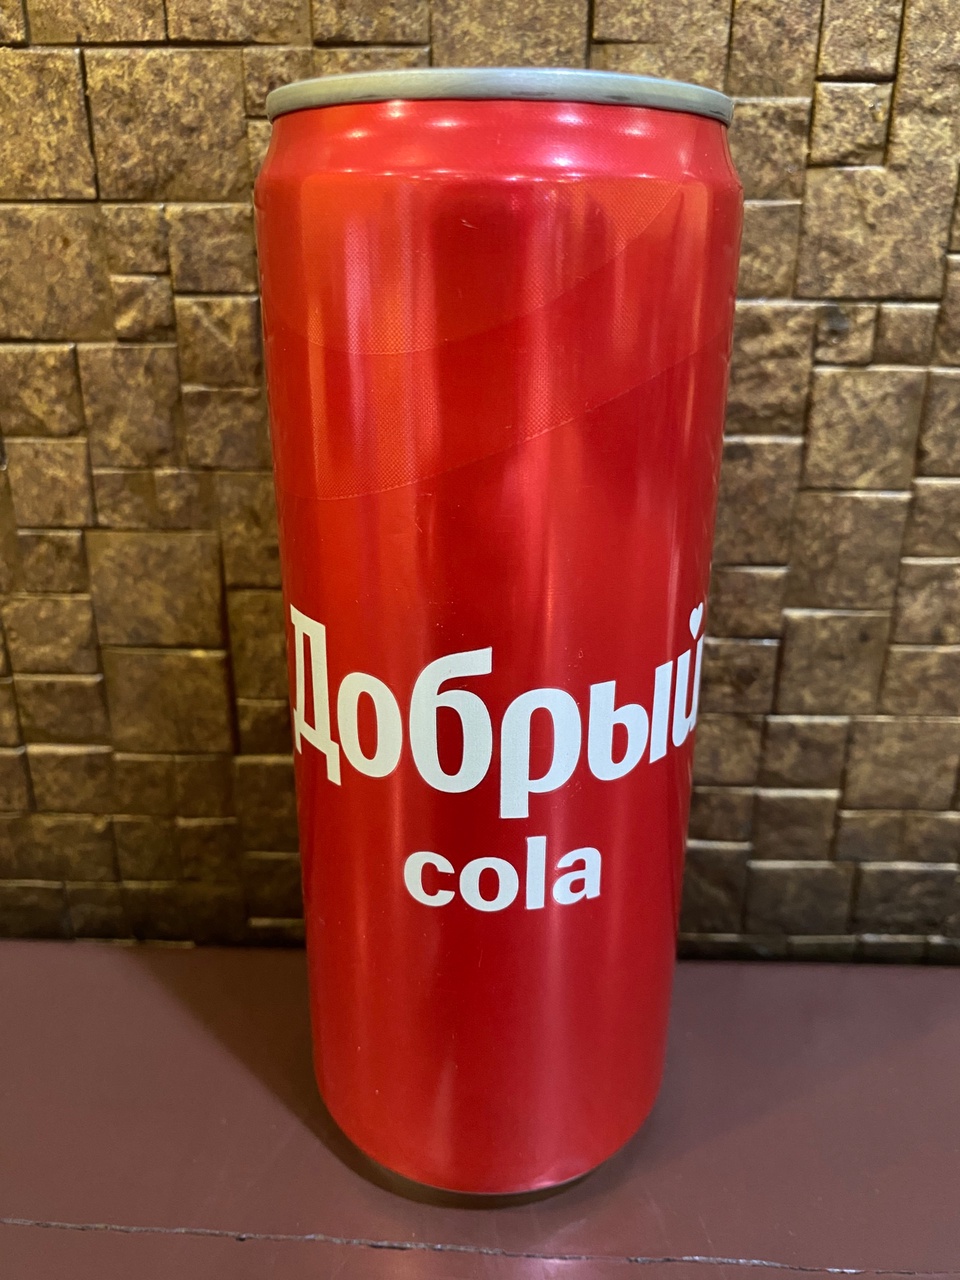 Кока-кола ж/б - 90 ₽, заказать онлайн.